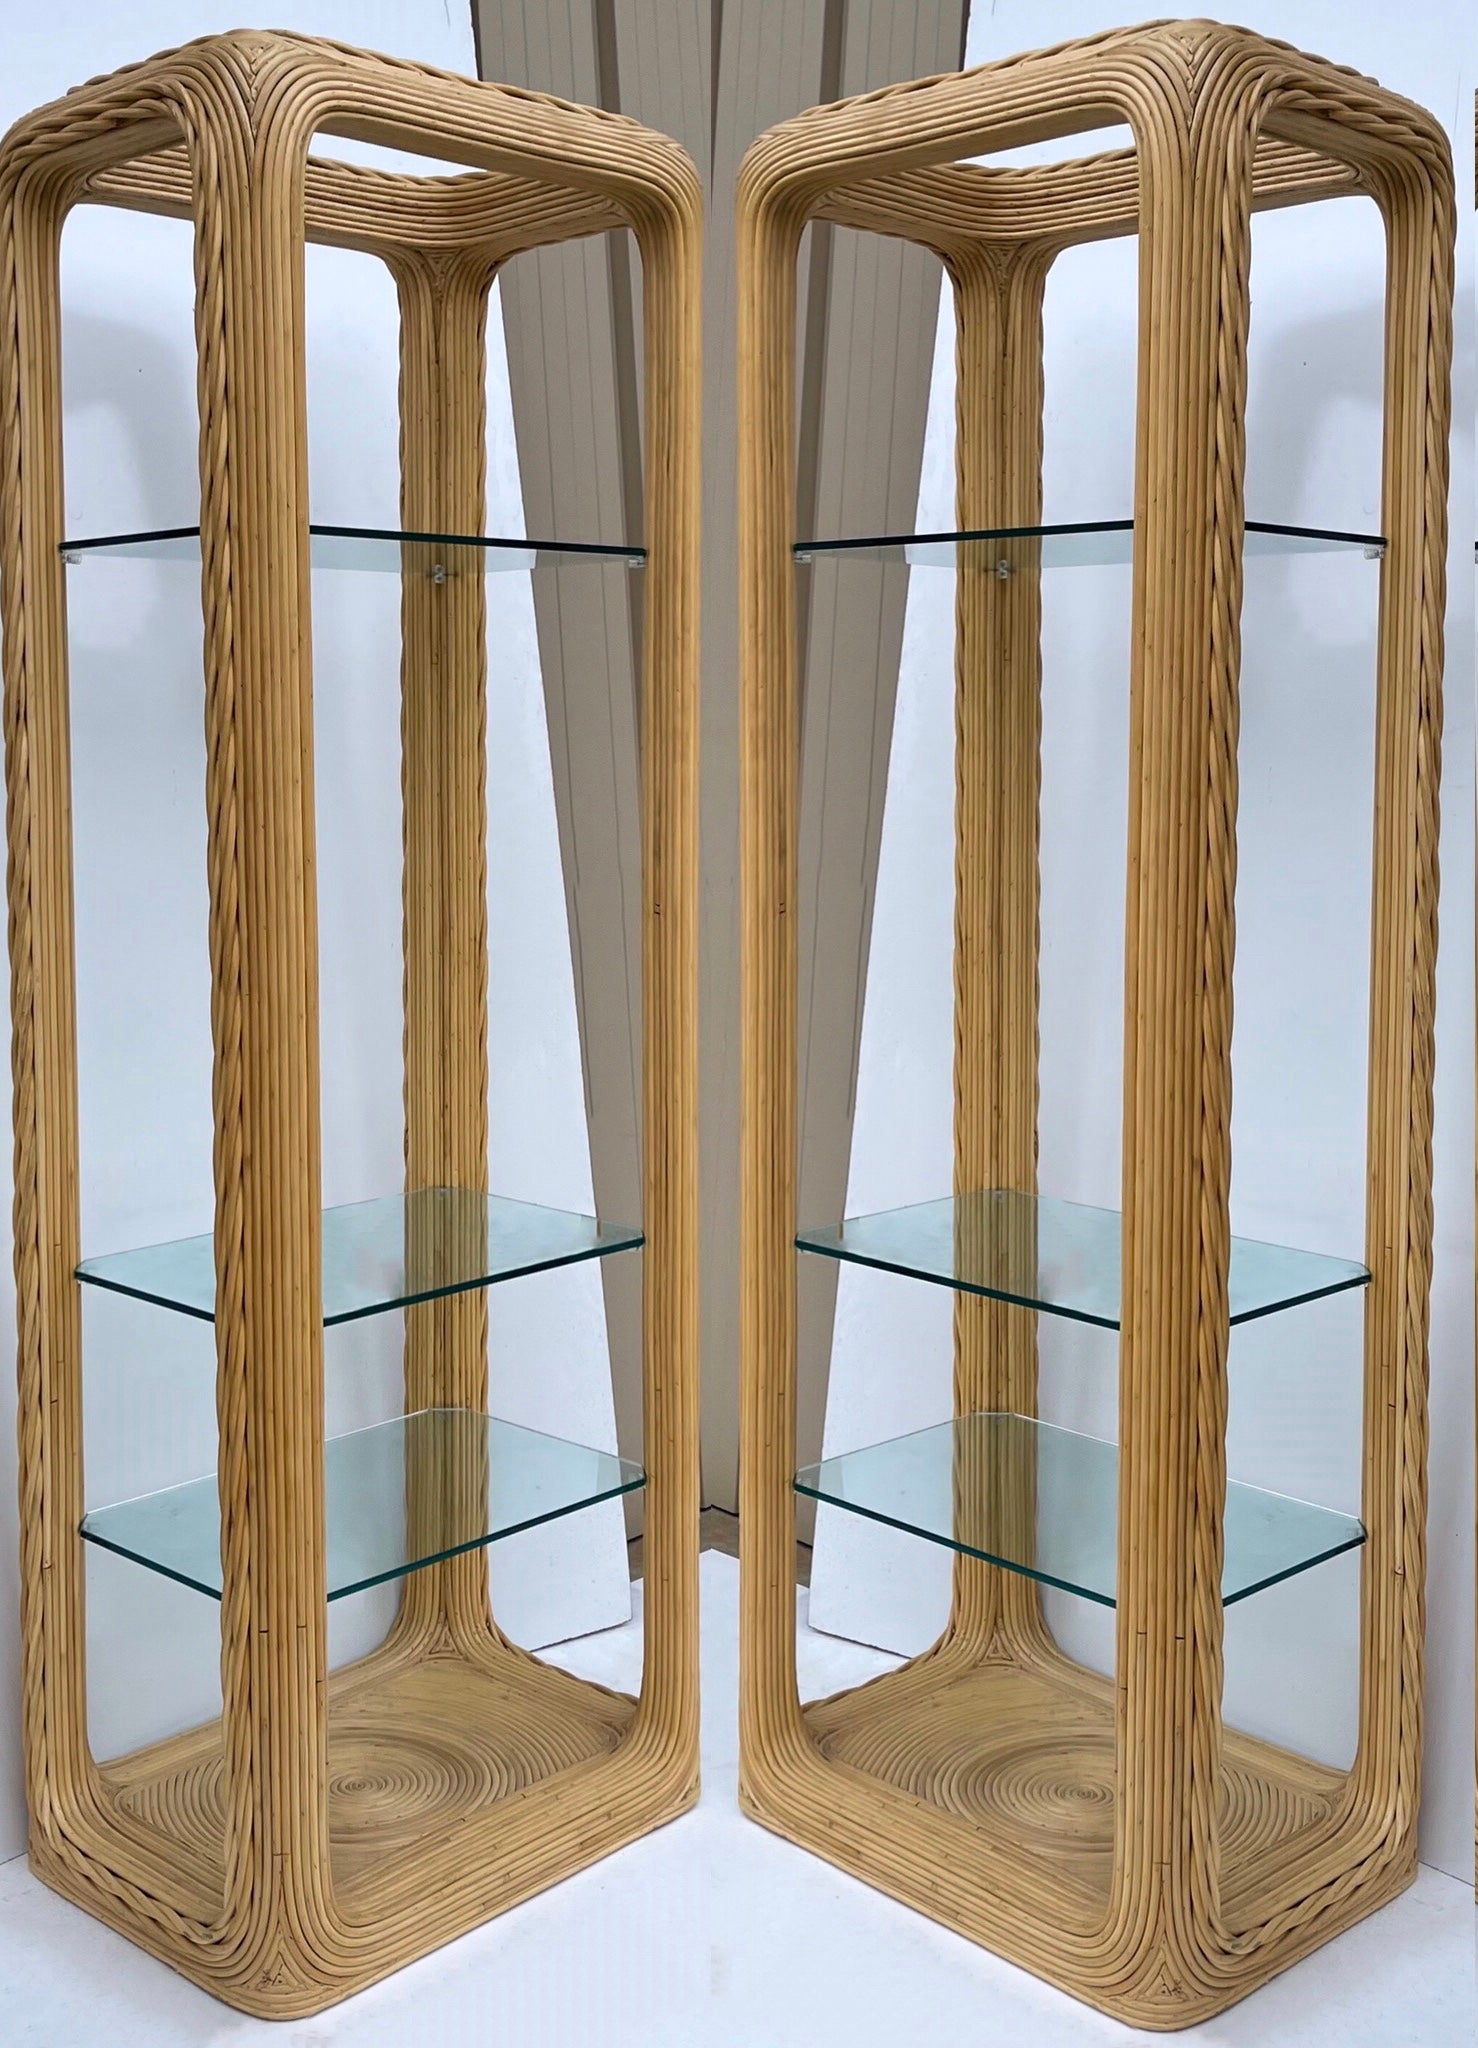 Il s'agit d'une paire d'étagères modernes en bambou crayonné réalisées à la manière de l'artiste italienne Gabriella Crespi. Ils sont en très bon état, et je suis heureux d'ajouter une étagère centrale dans le grand espace ouvert si vous le